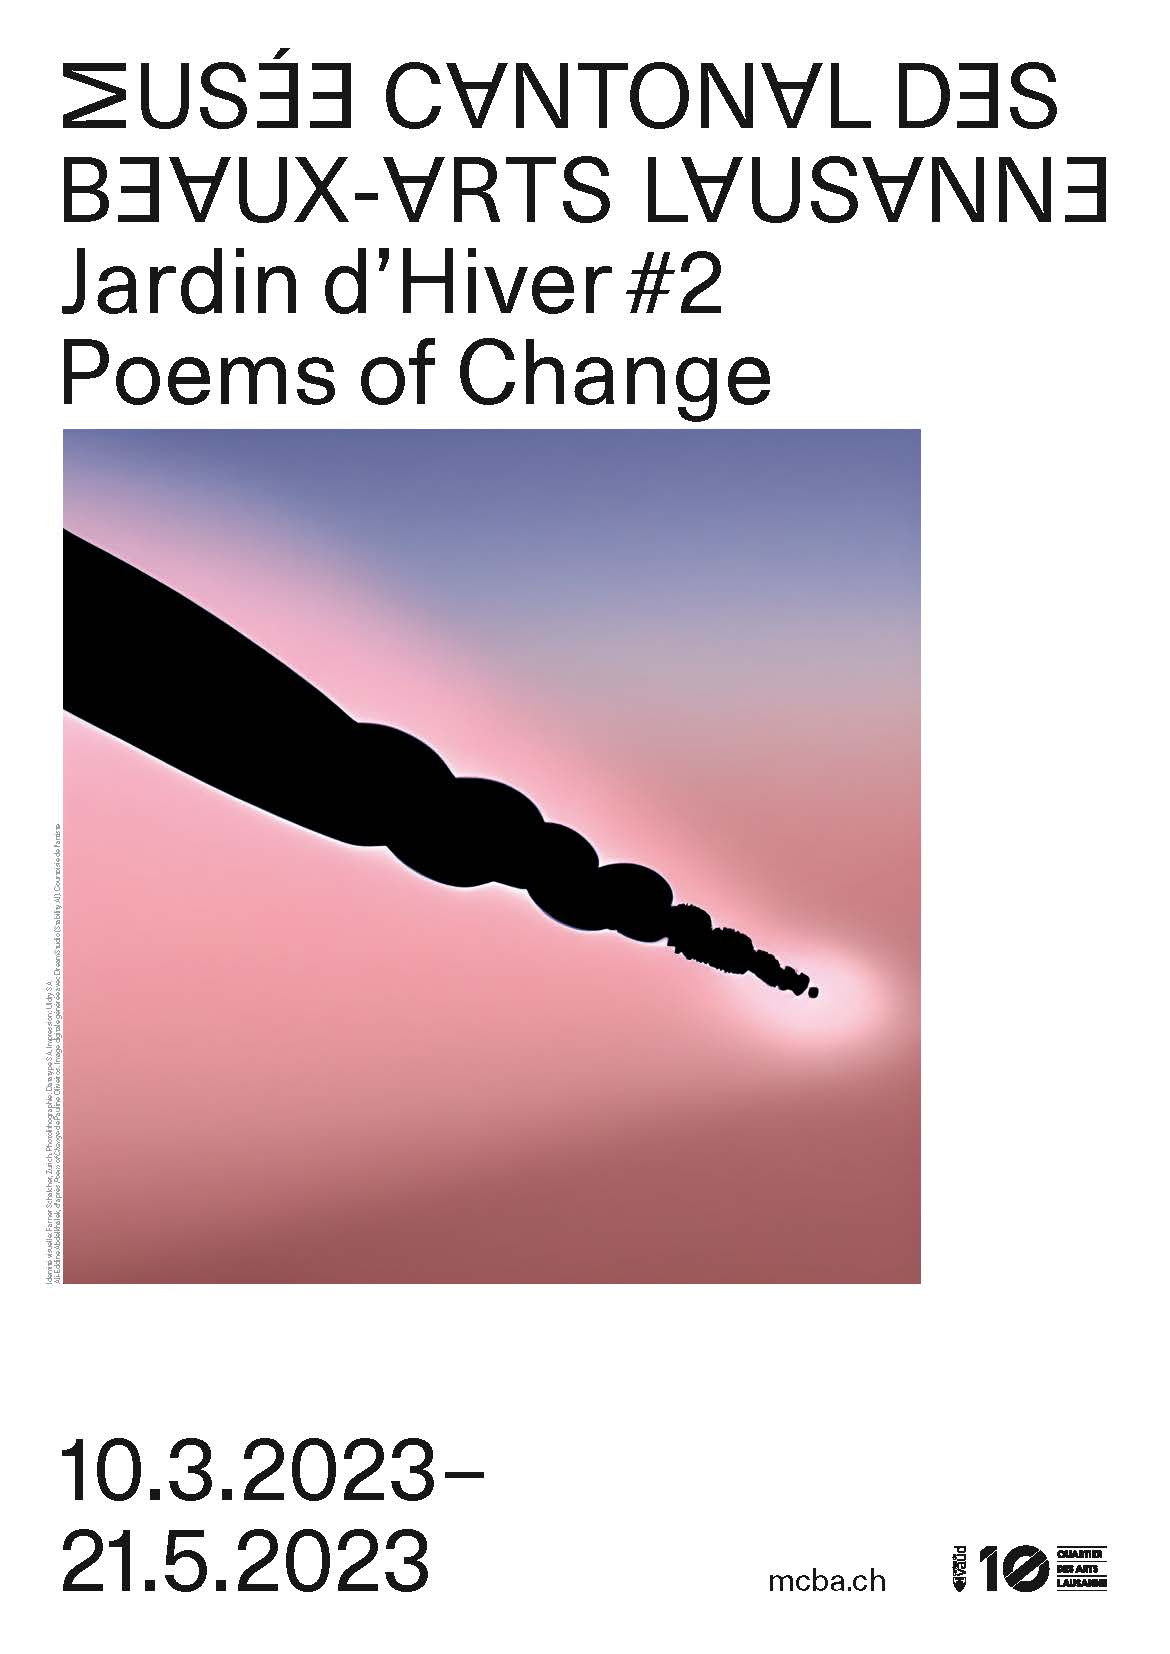 Jardin d’Hiver #2 Poems of Change